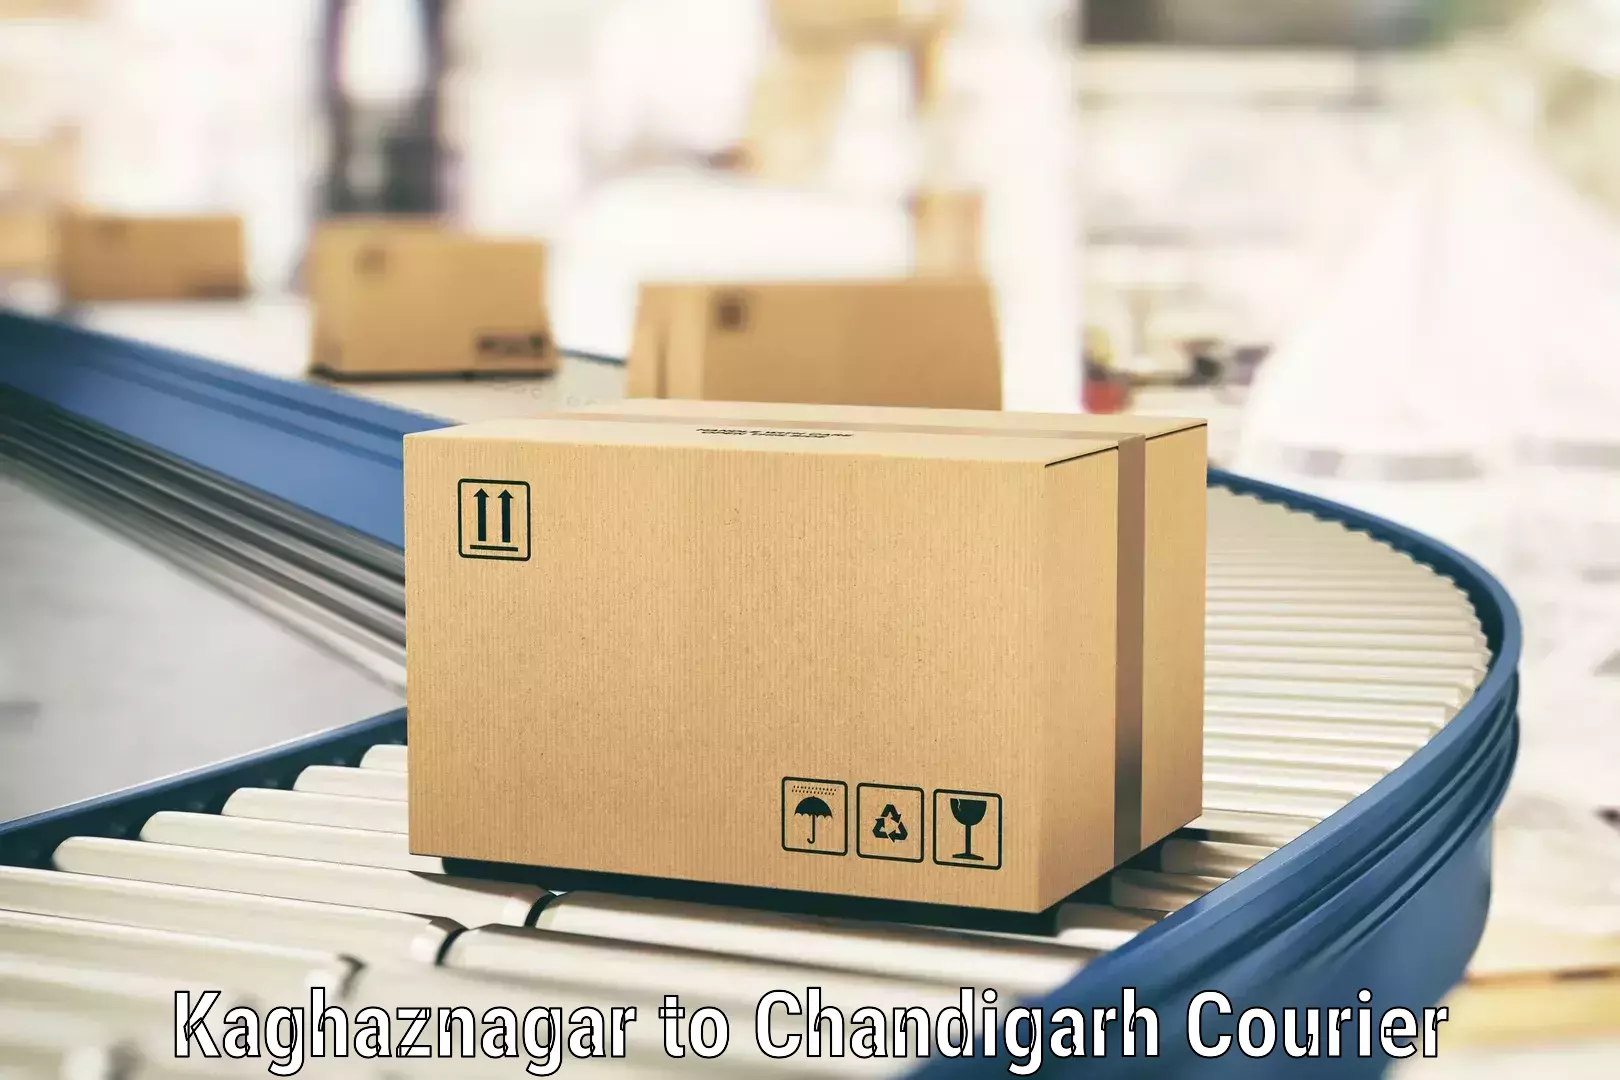 Efficient parcel service Kaghaznagar to Chandigarh